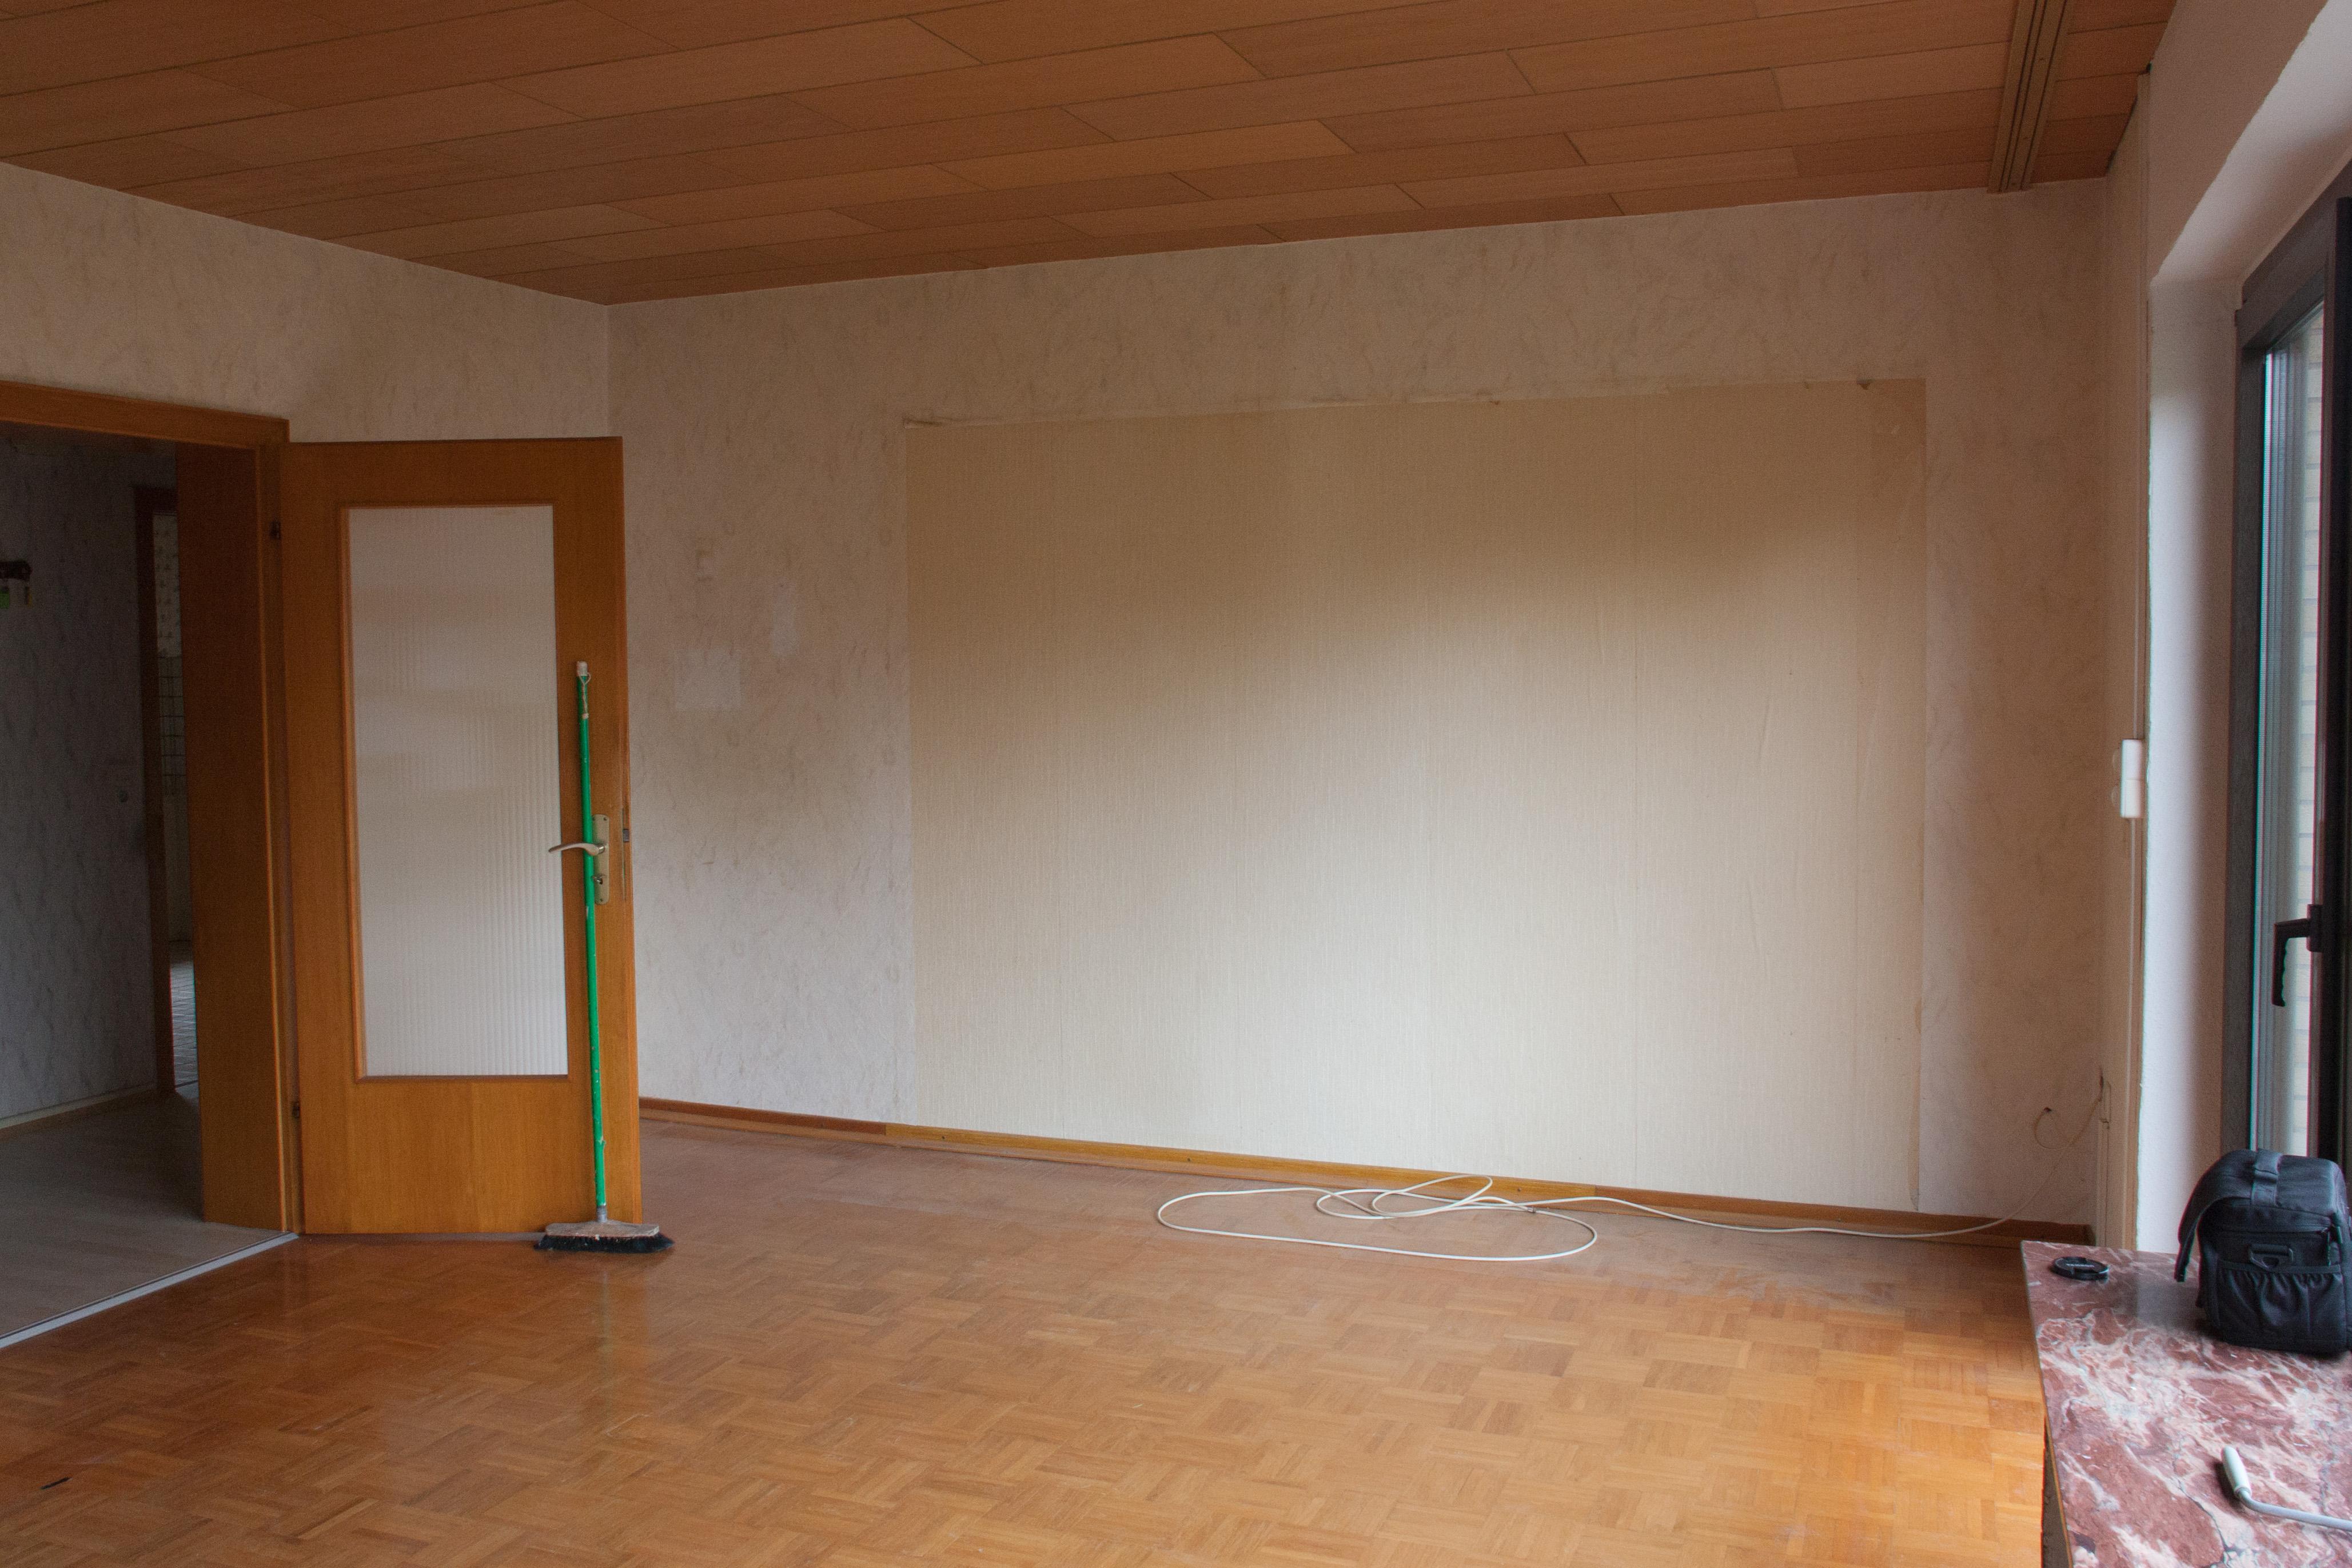 Wohnzimmer - vorher #wohnzimmer ©IMMOTION Home Staging / Florian Gürbig